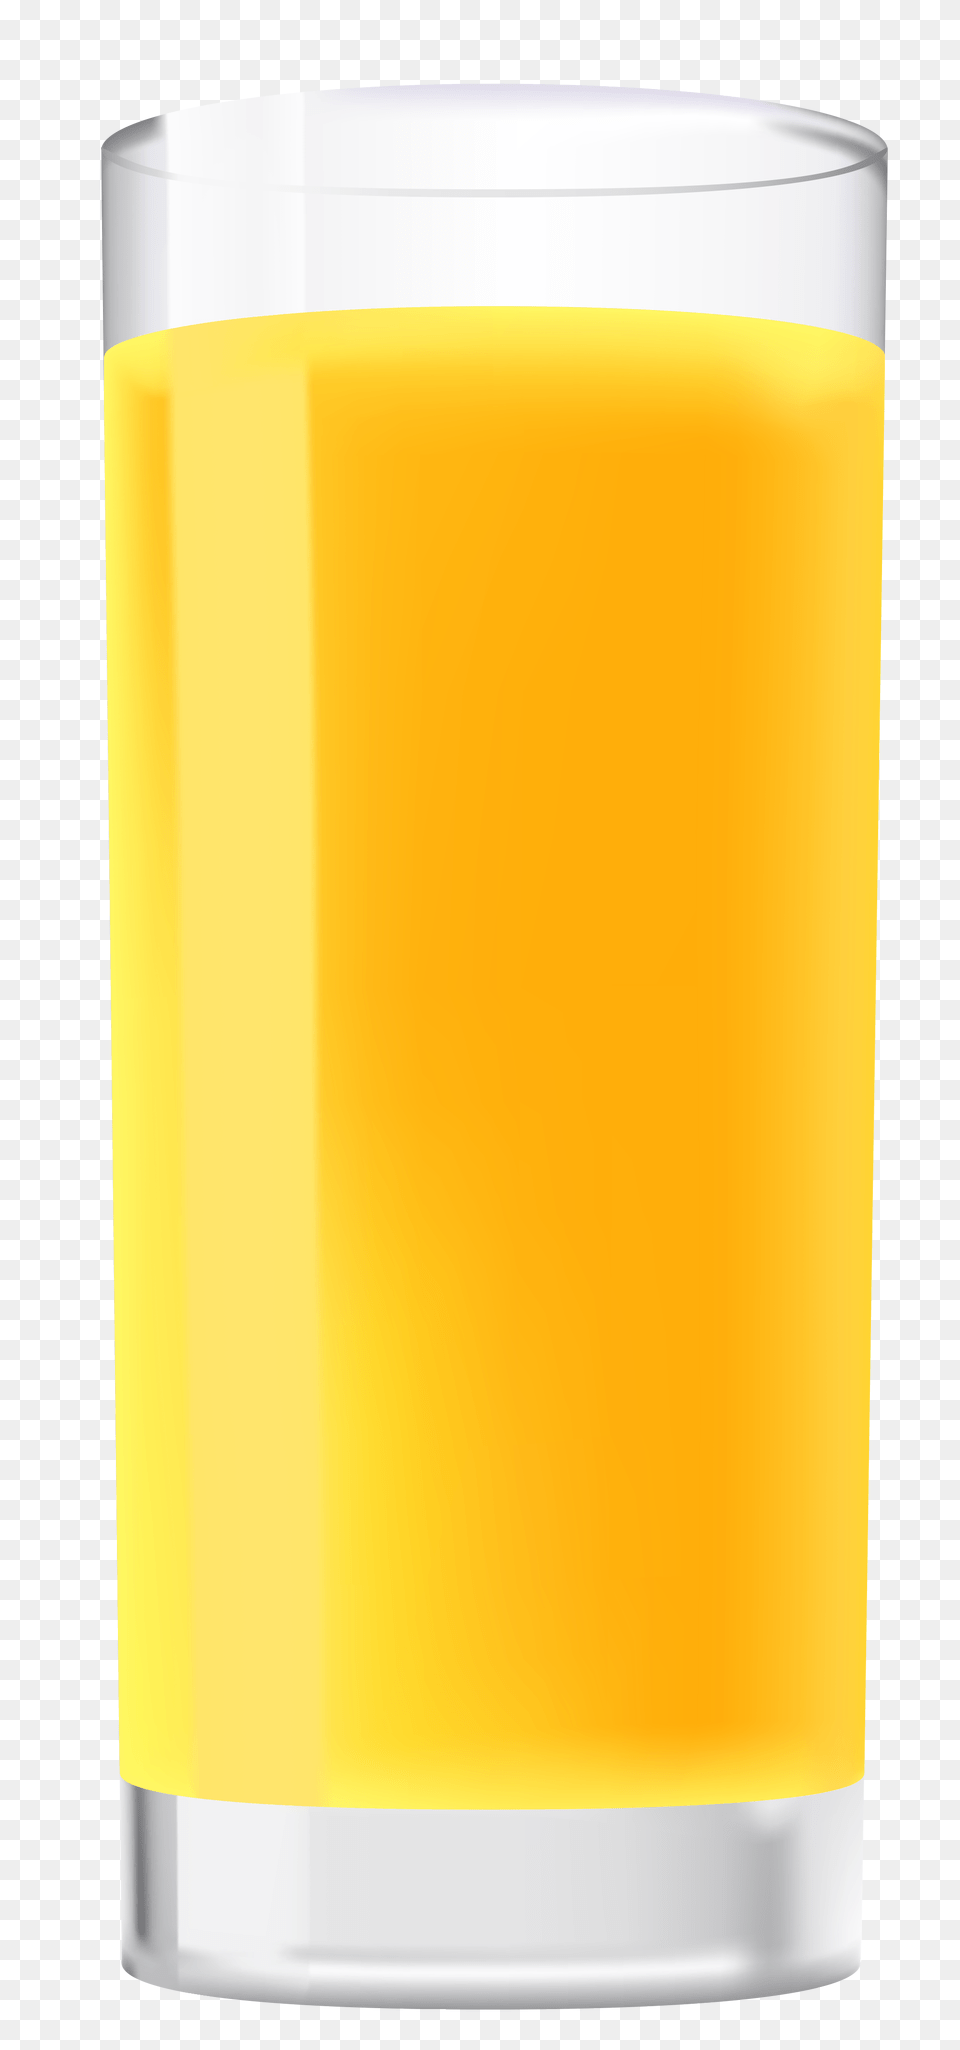 Juice Clipart Background, Beverage, Glass, Orange Juice, Bottle Free Transparent Png